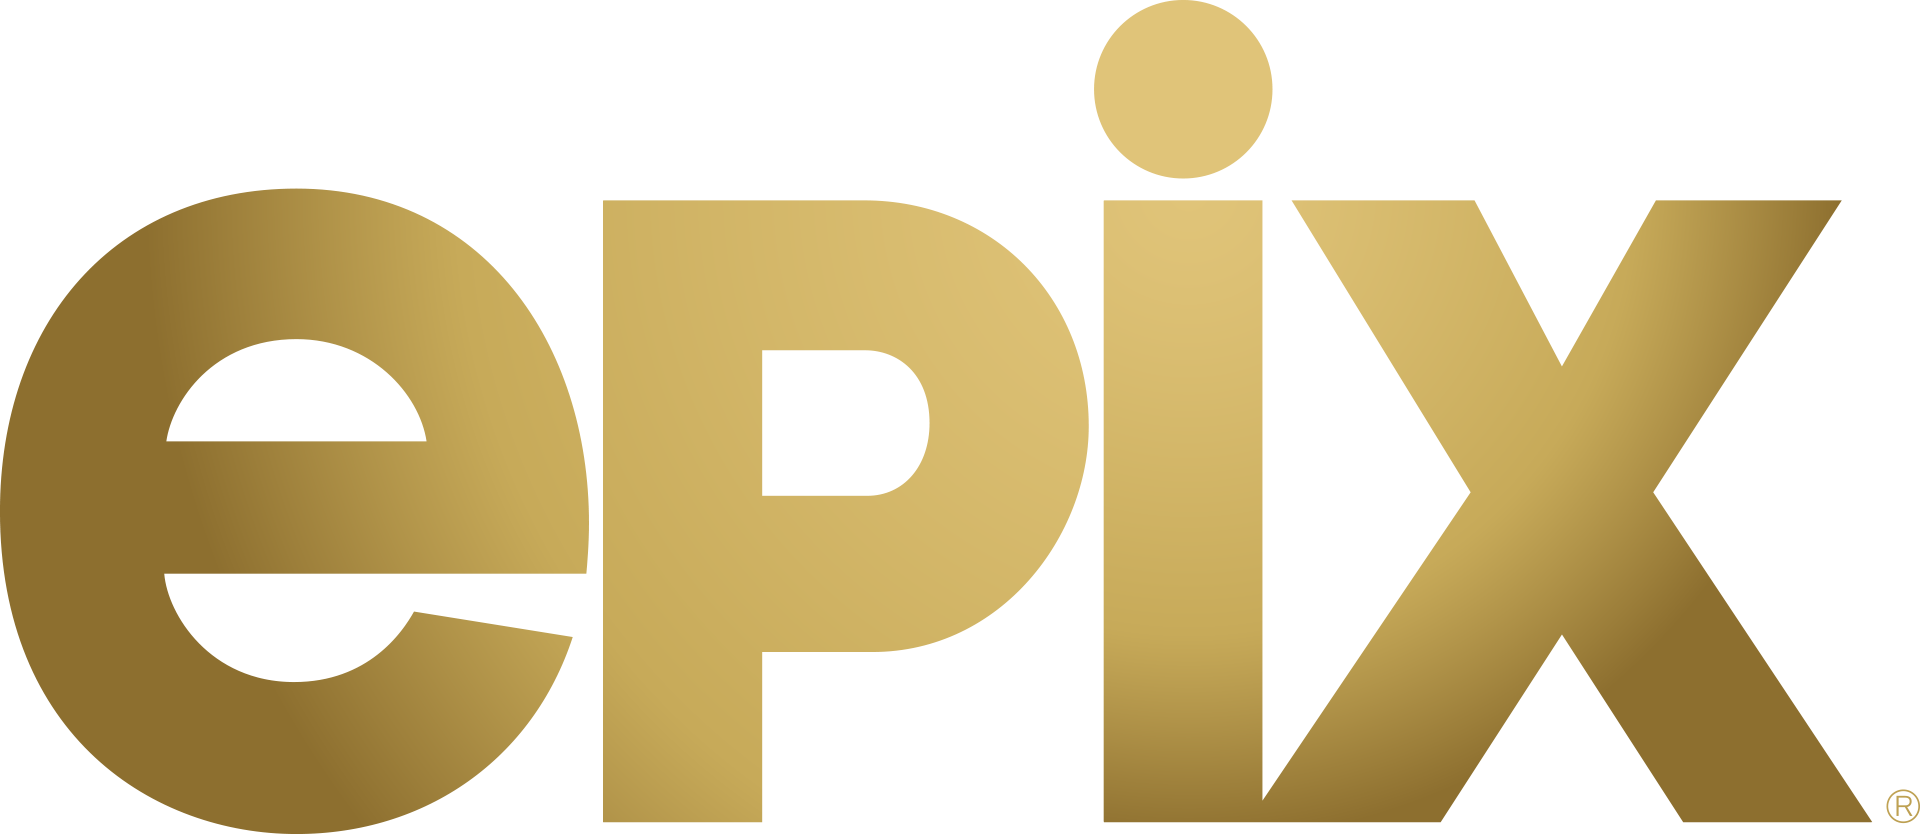 epix logo